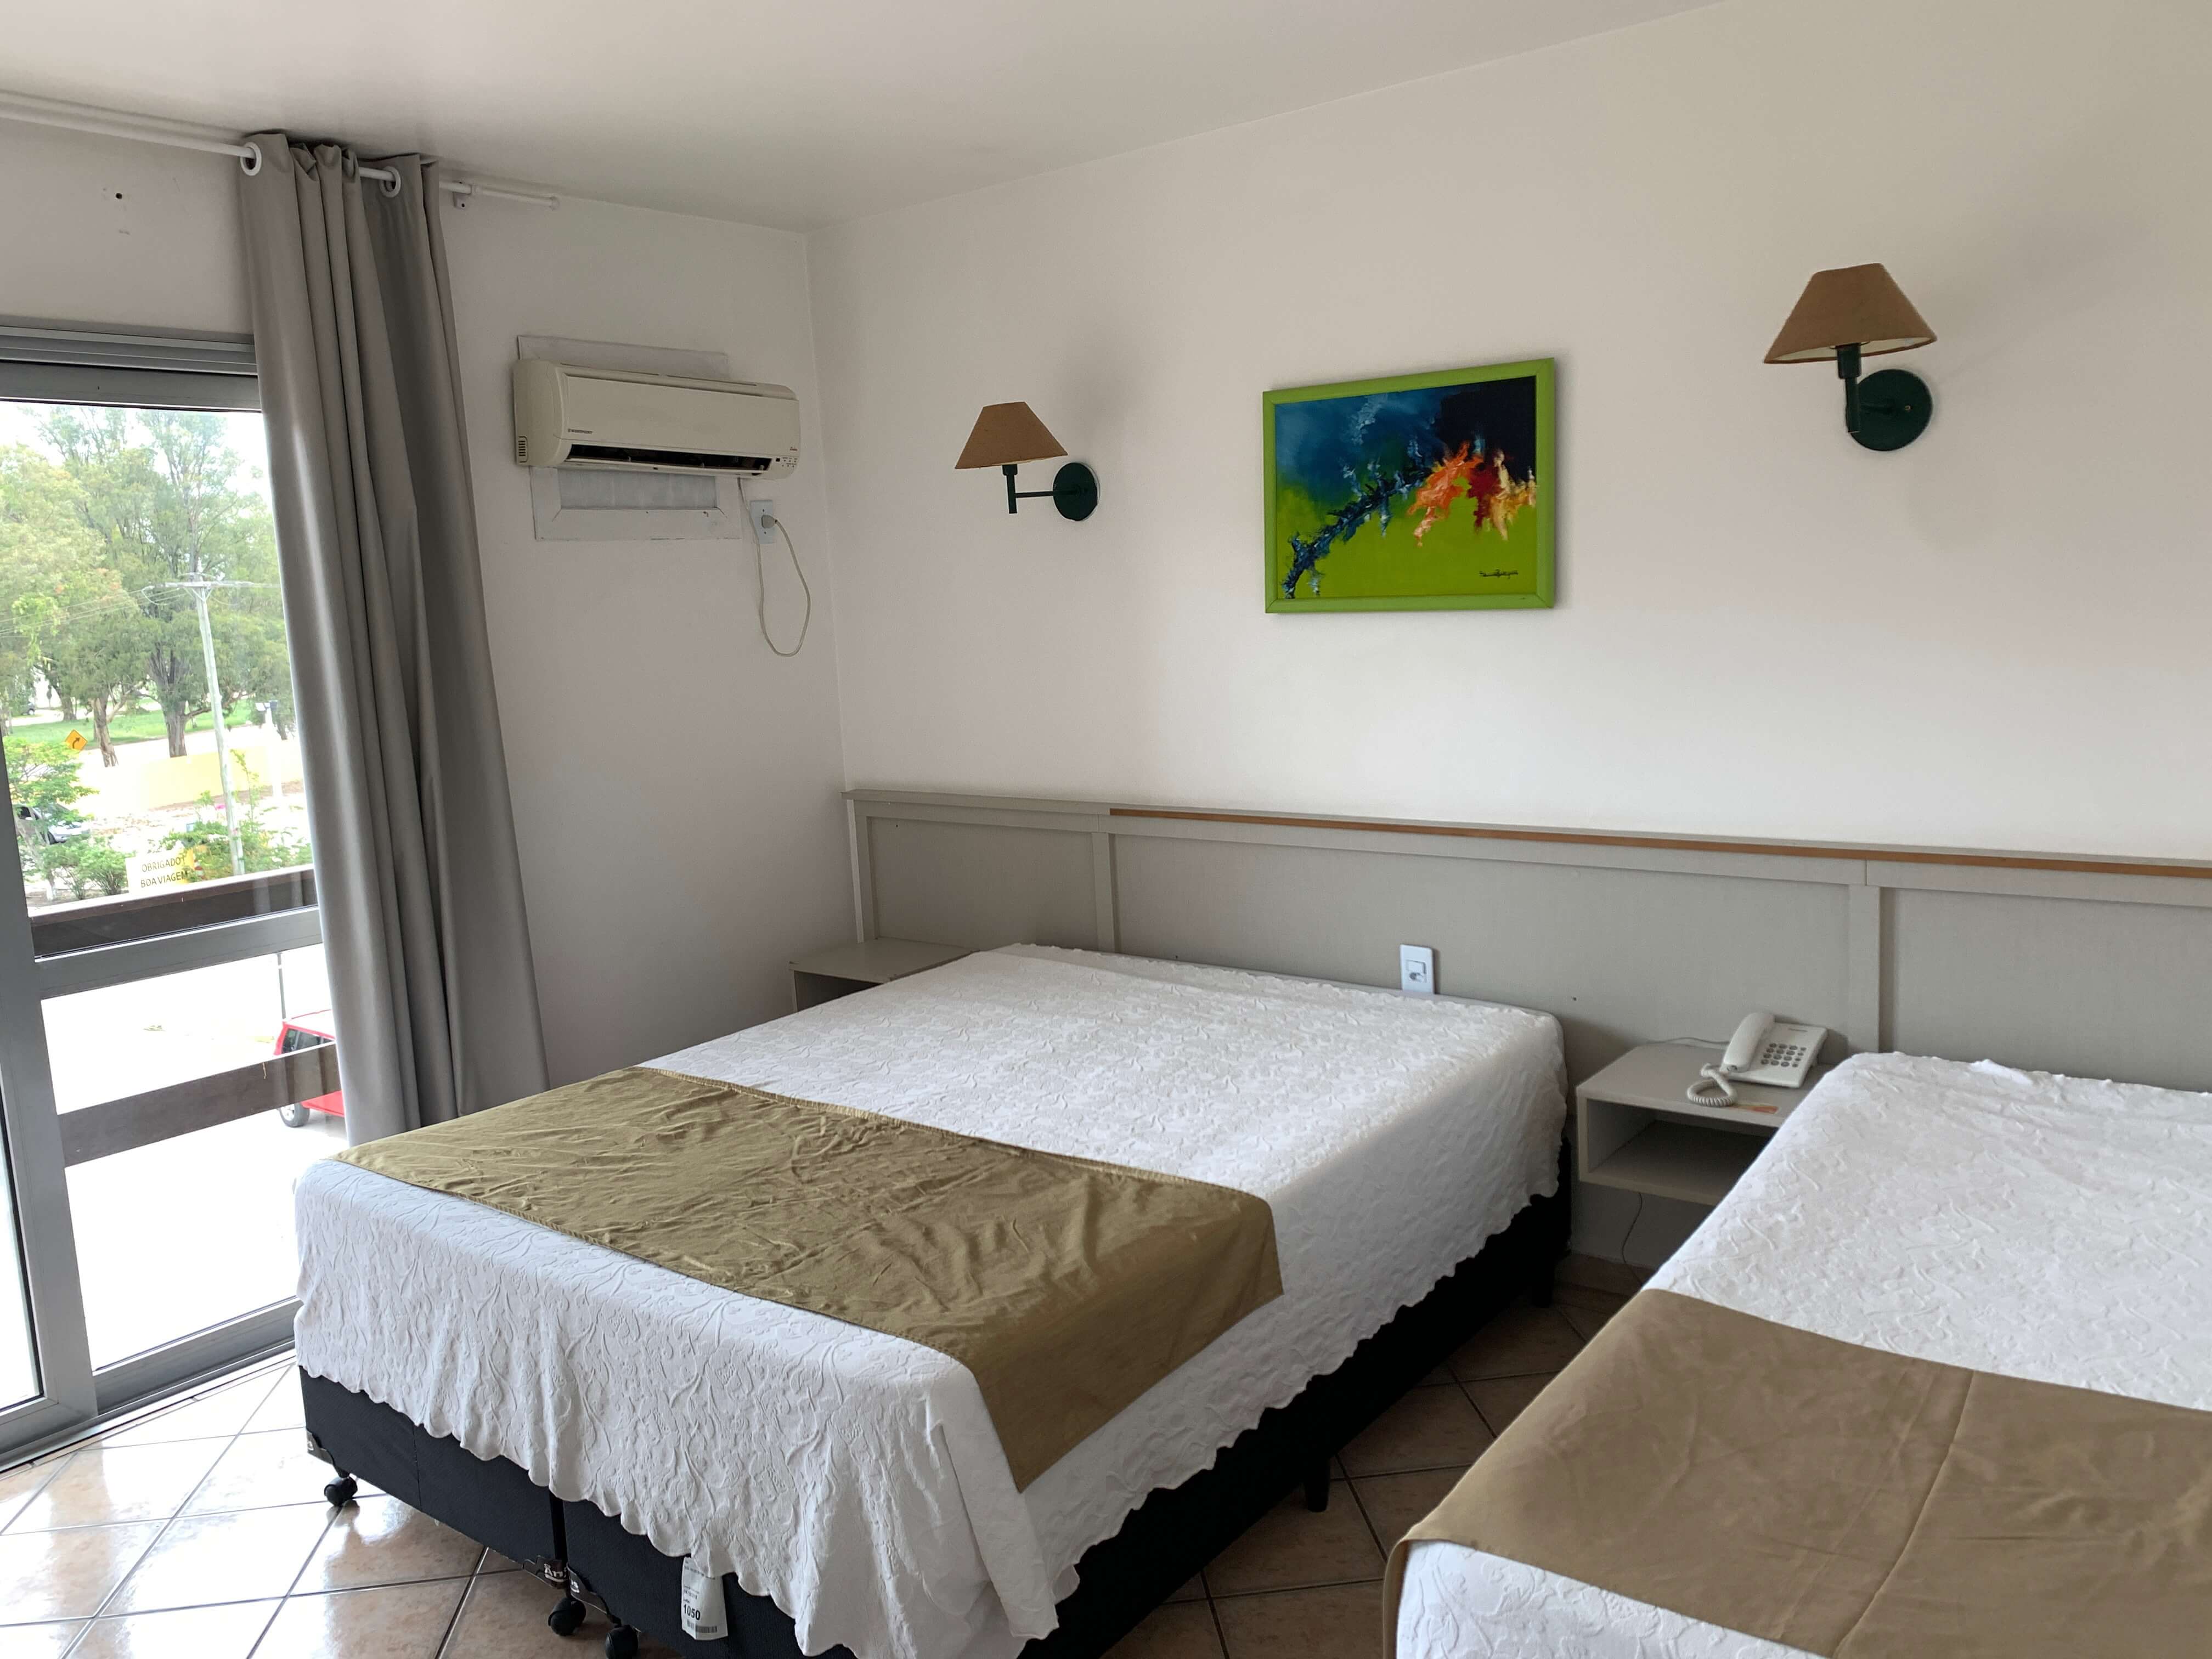 Quarto do hotel Bertelli, com duas camas, quadro, luminária e ar condicionado